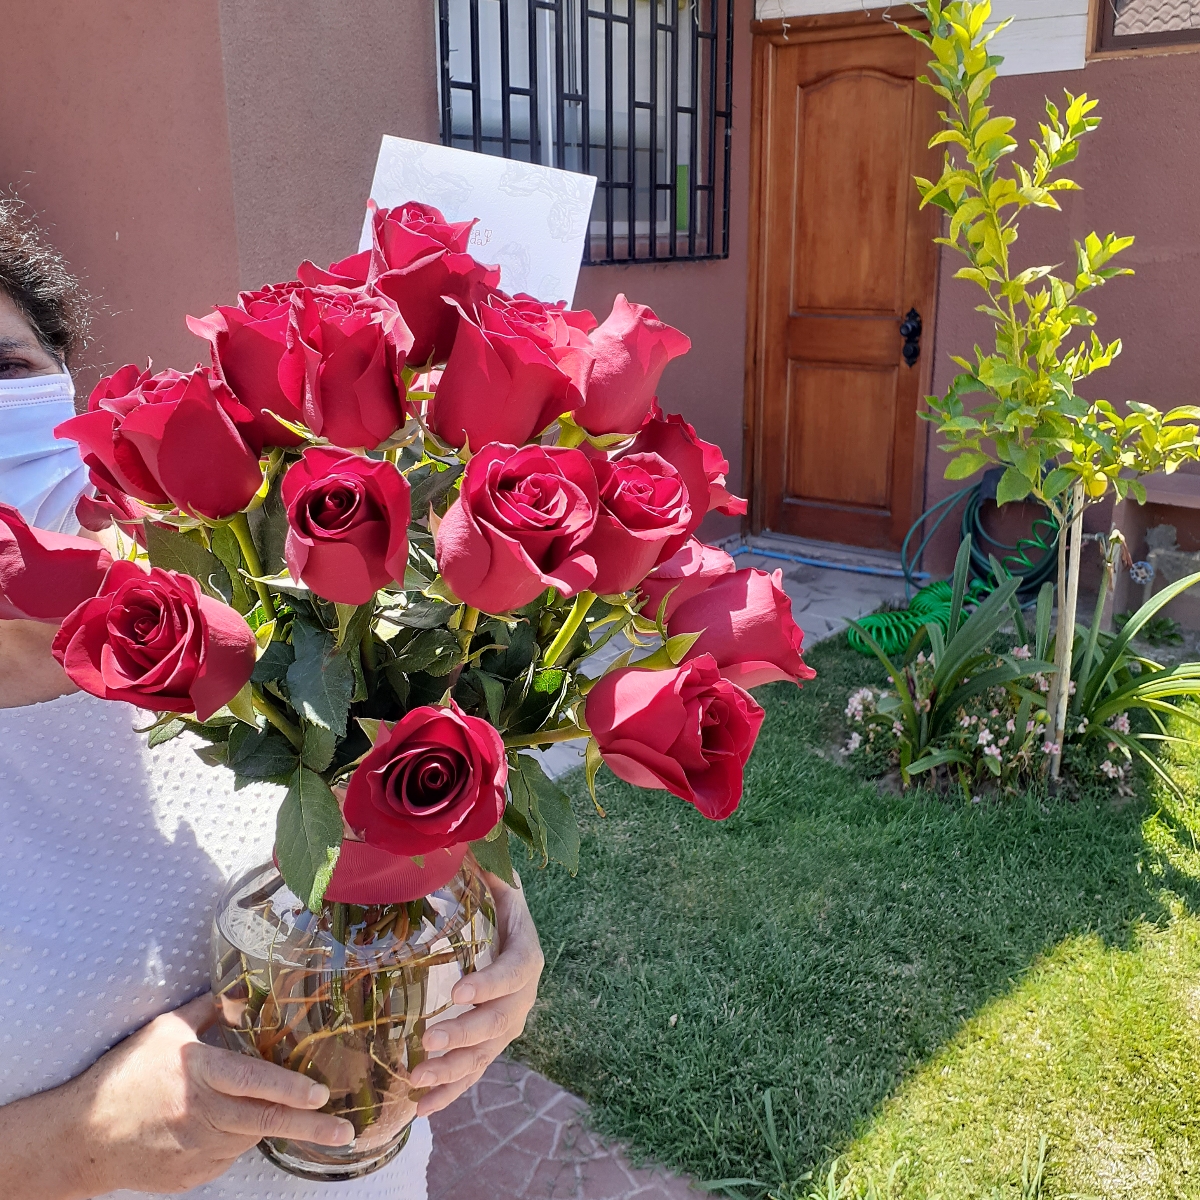 Arreglo floral en florero ánfora con 24 rosas rojas - Pedido 248391